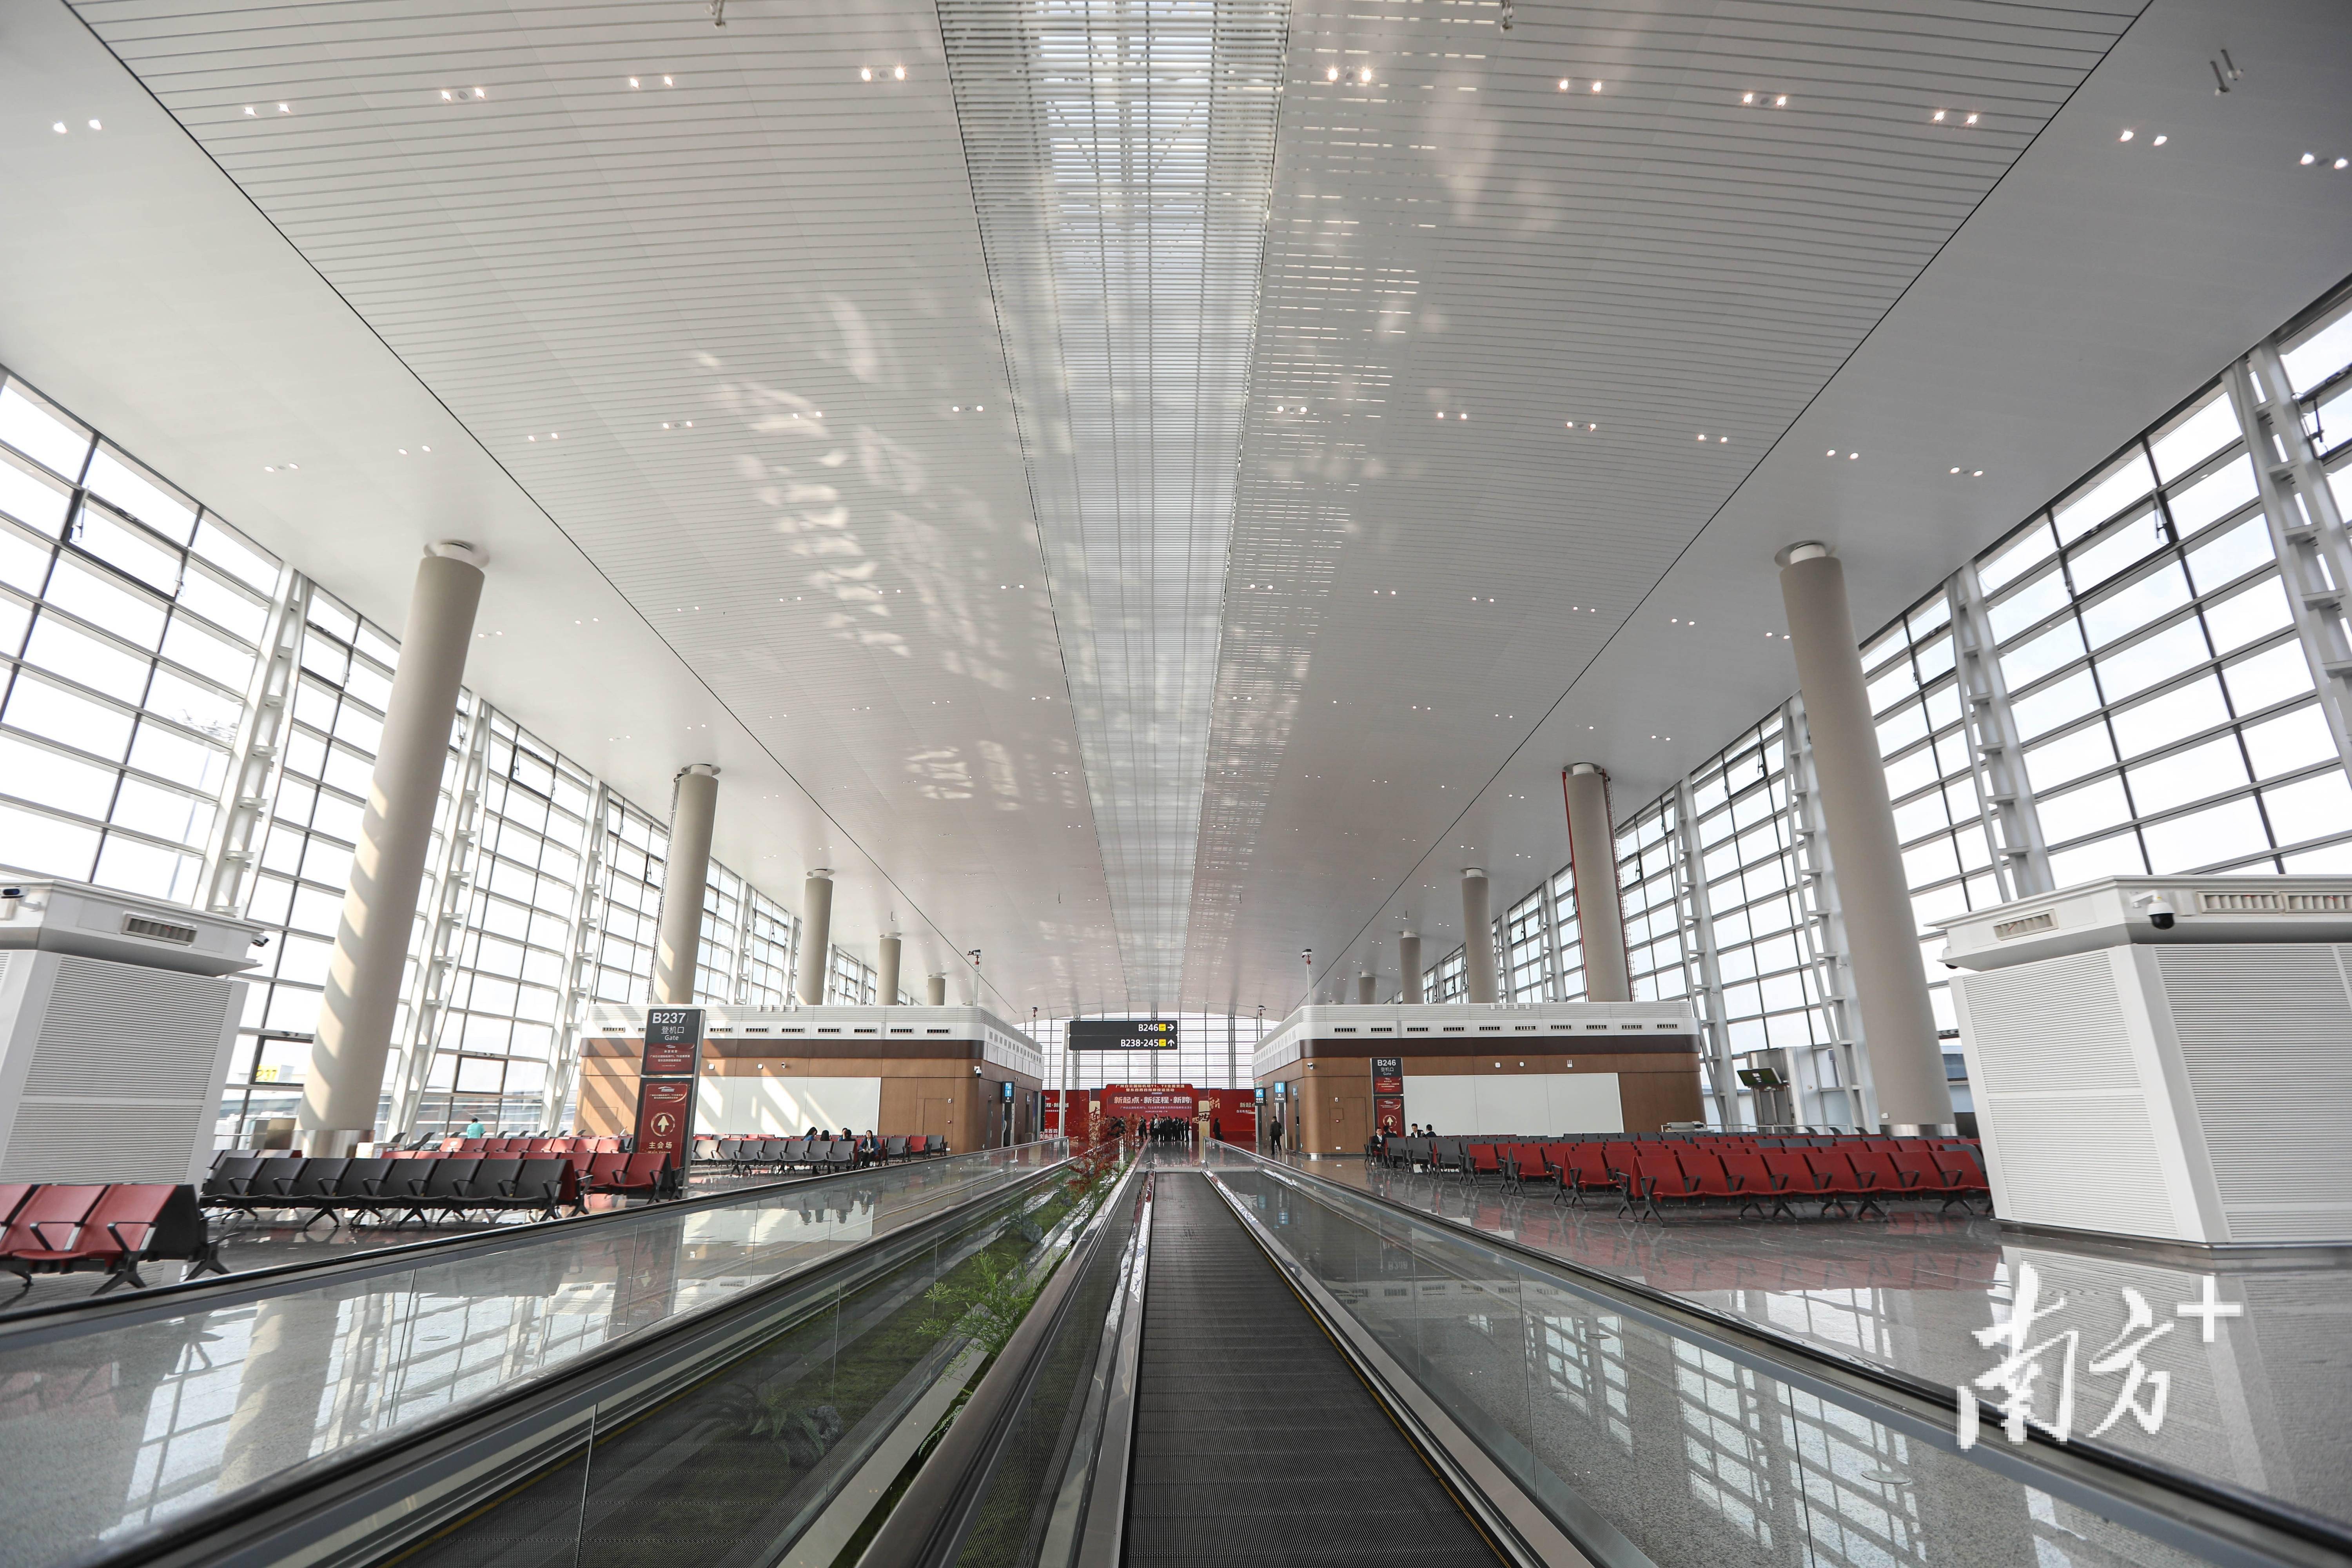 t1,t2成功牵手!广州白云机场成世界最大单体航站楼